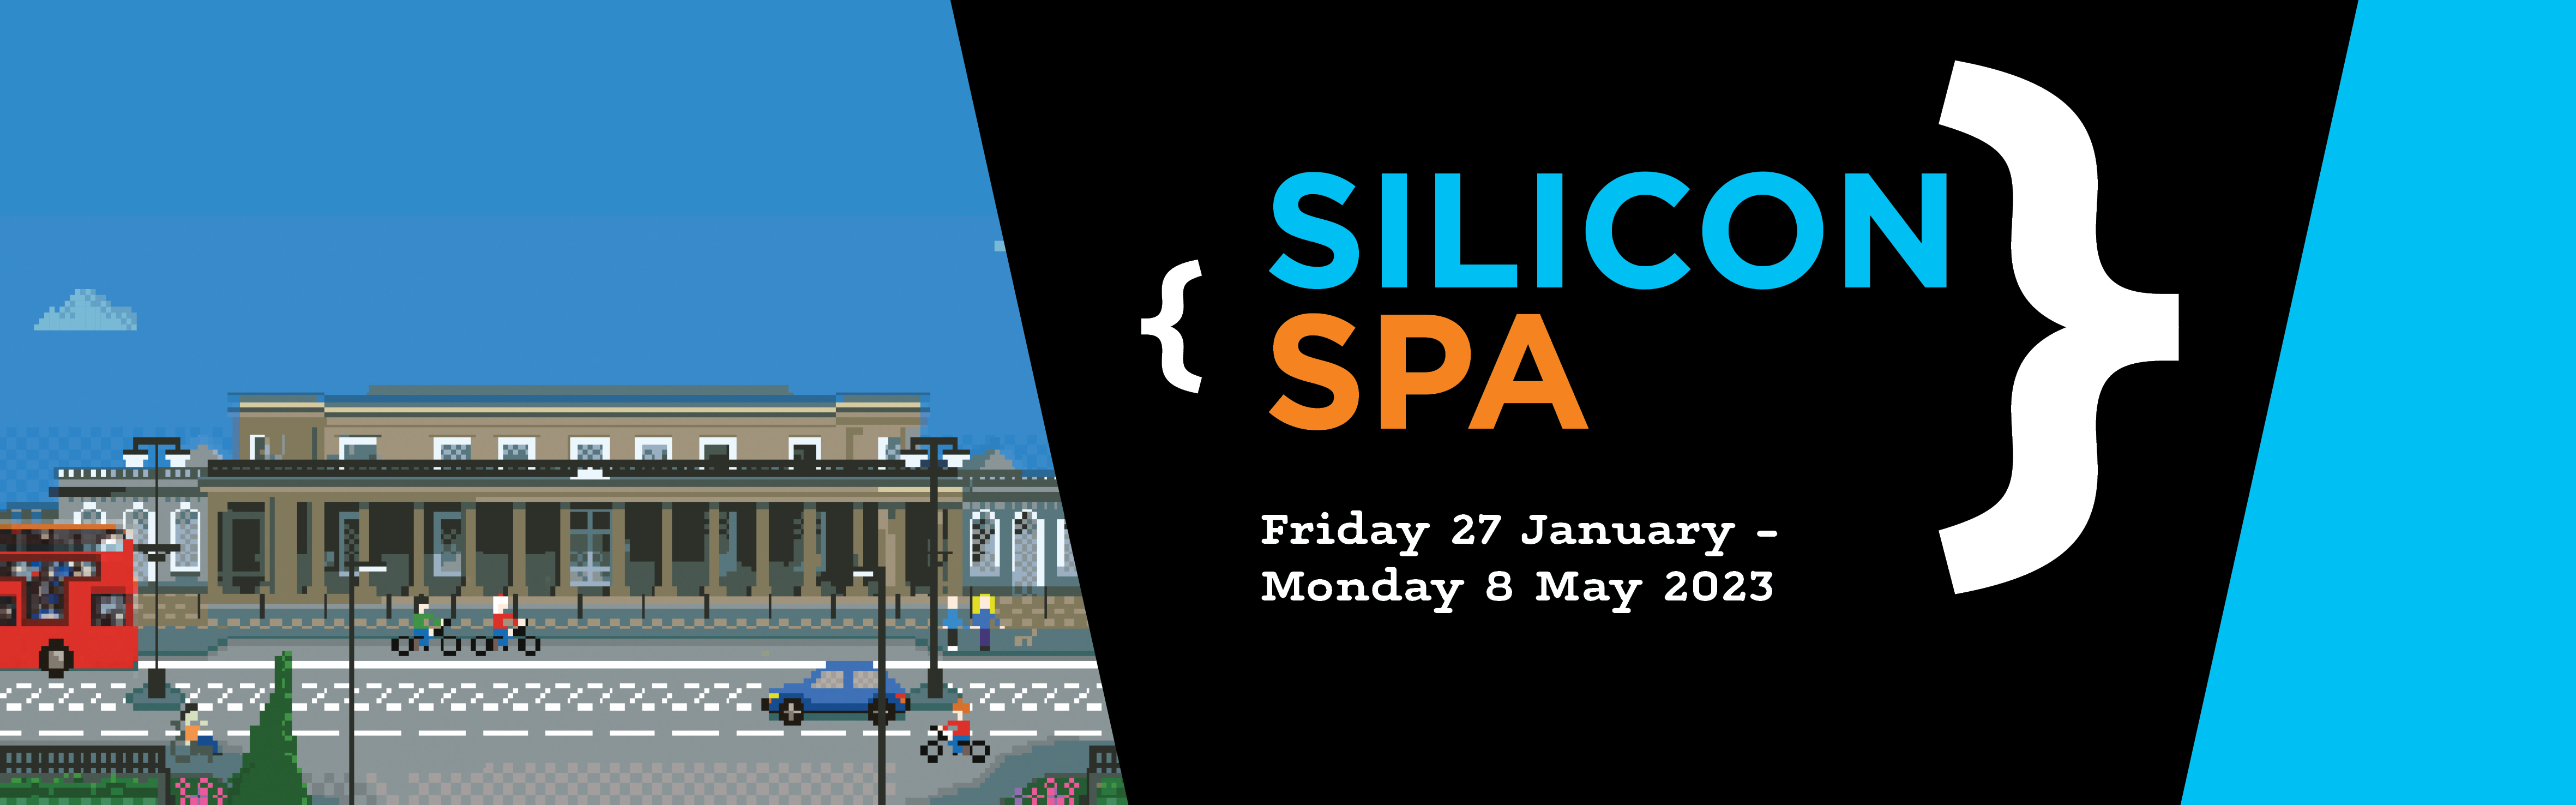 Silicon Spa, Silicon Spa banner